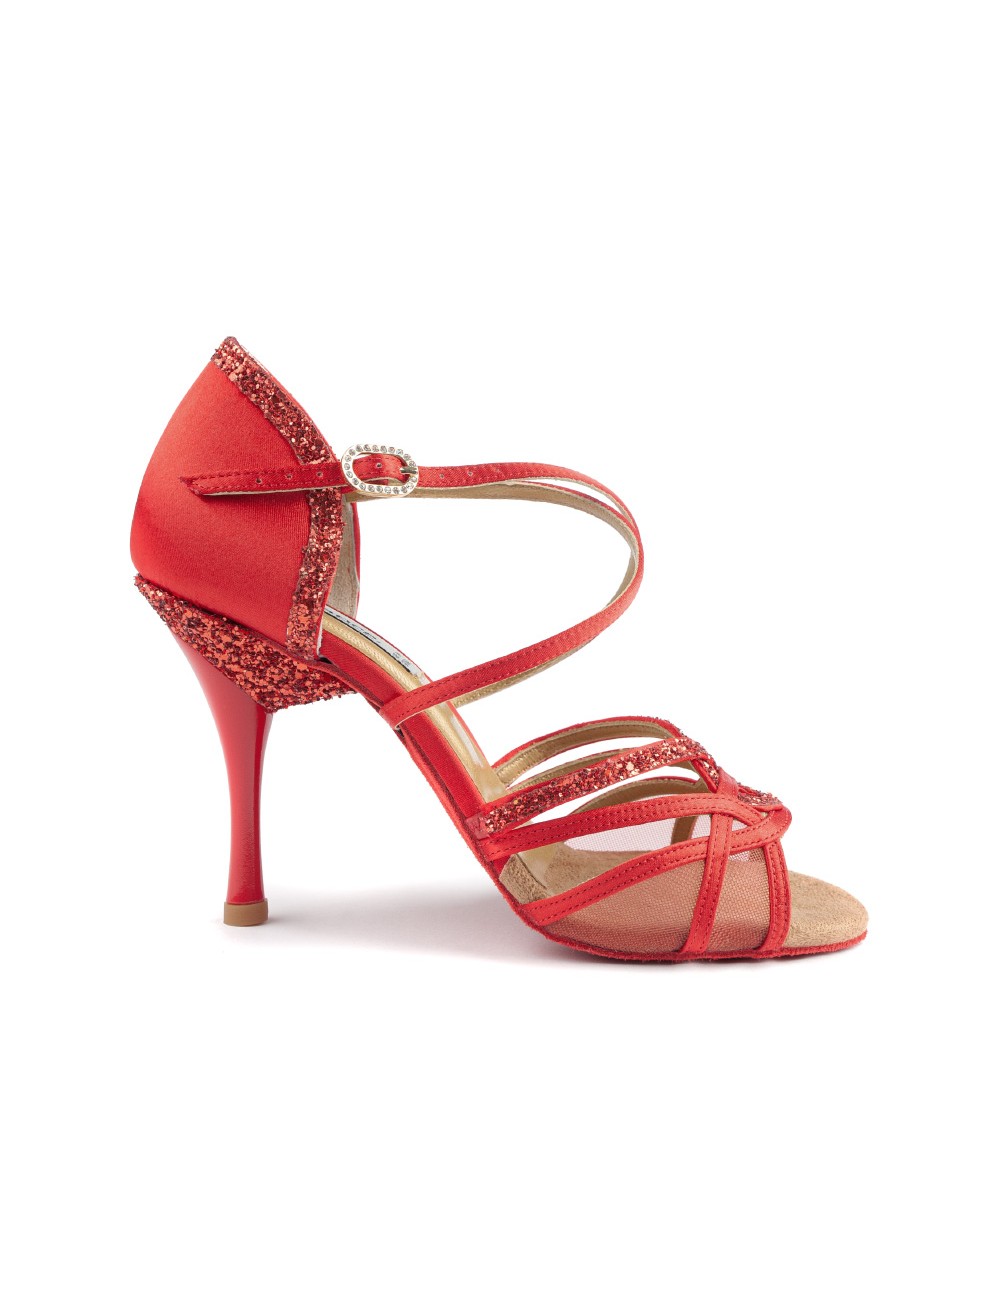  Dancing Shoes Zapatos de baile latino para mujer, zapatos de  baile de salsa de salón para mujer, tacón medio alto, social para baile en  interiores (rojo, 7UK/255CN) (Color rojo, tamaño: 5.5UK/240CN) 